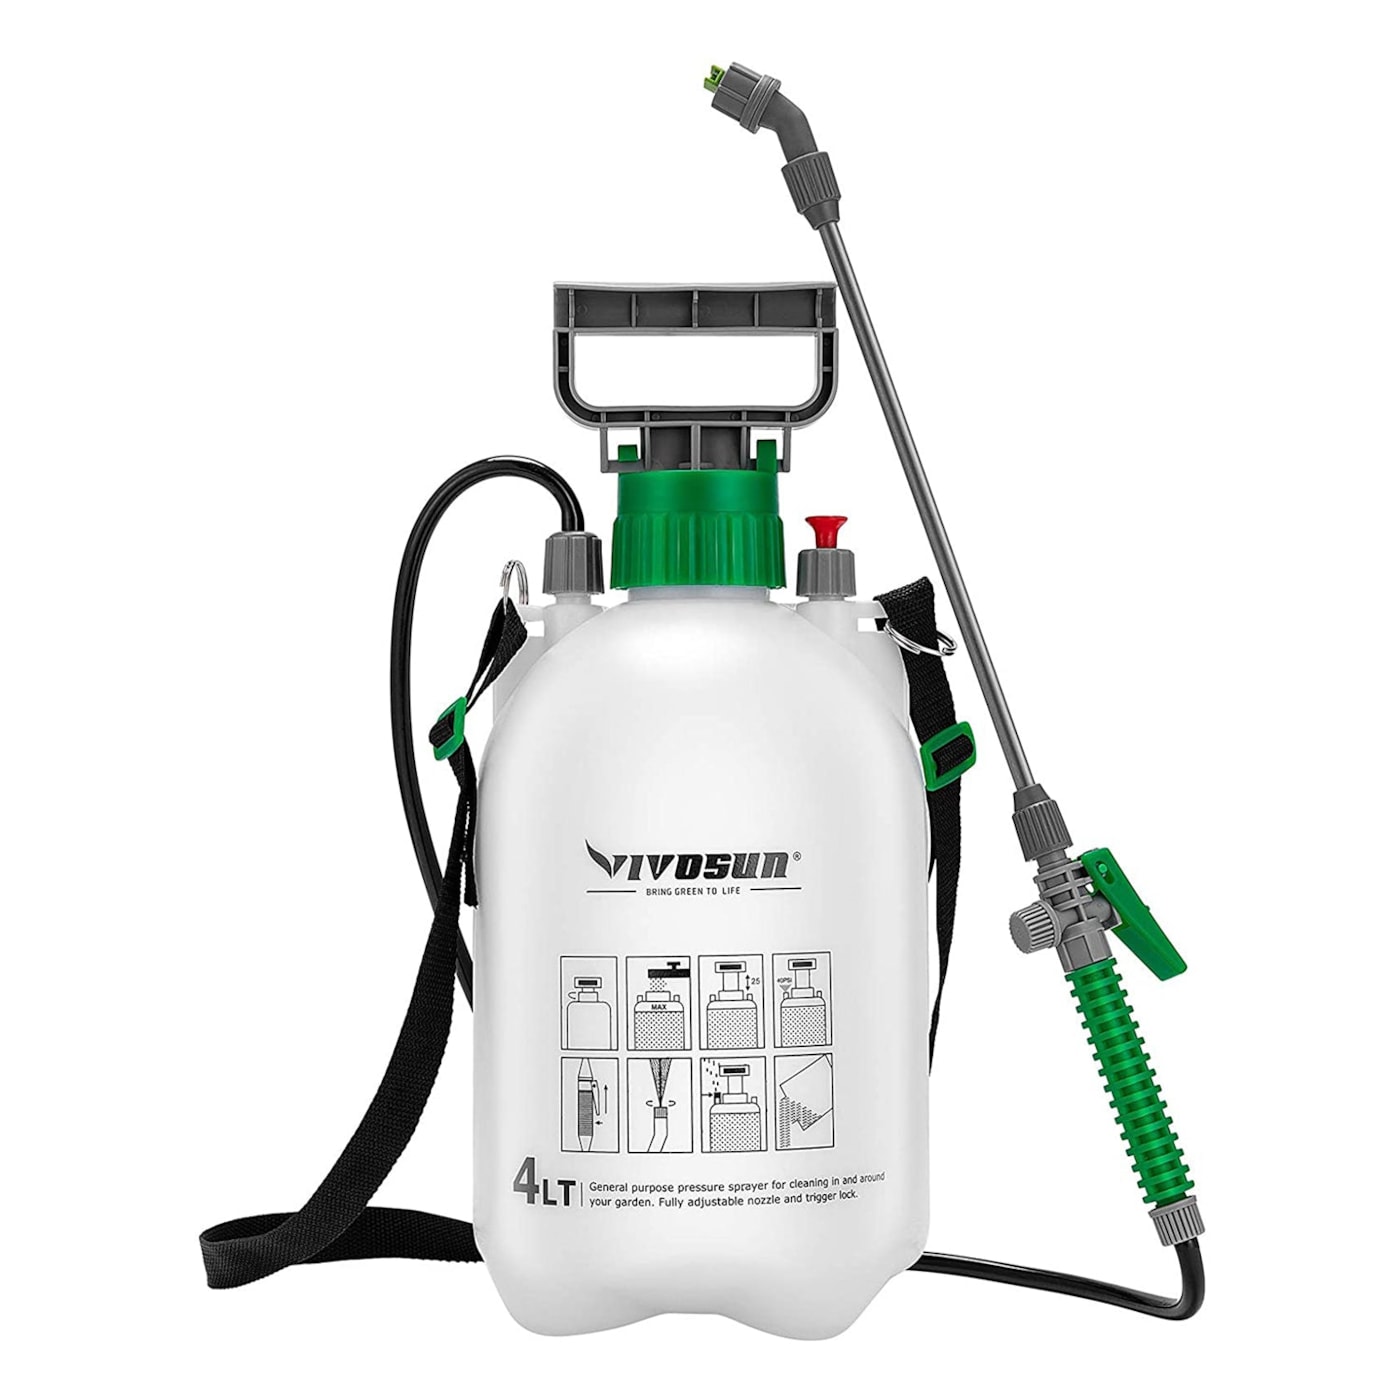 VIVOSUN 1 Gallon Pressure Sprayer 3 Water Nozzles with Adjustable Shoulder Strap